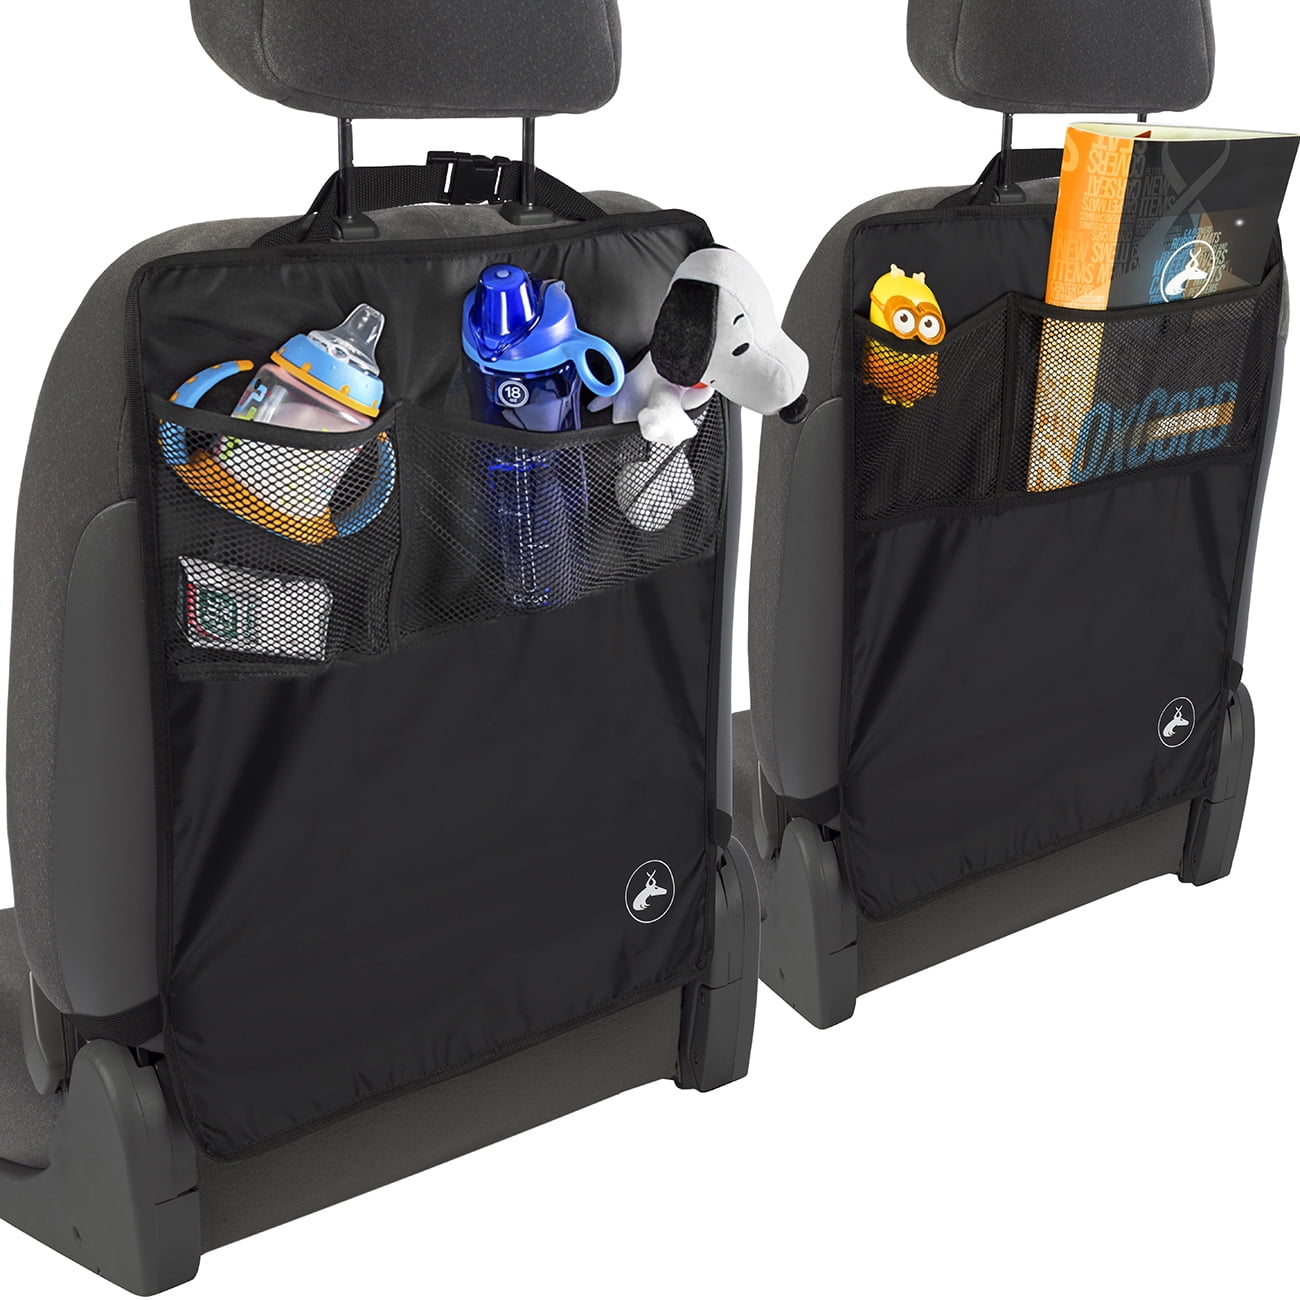 Ergoseat 904005 Magnetic Car Seat Cover in Bag